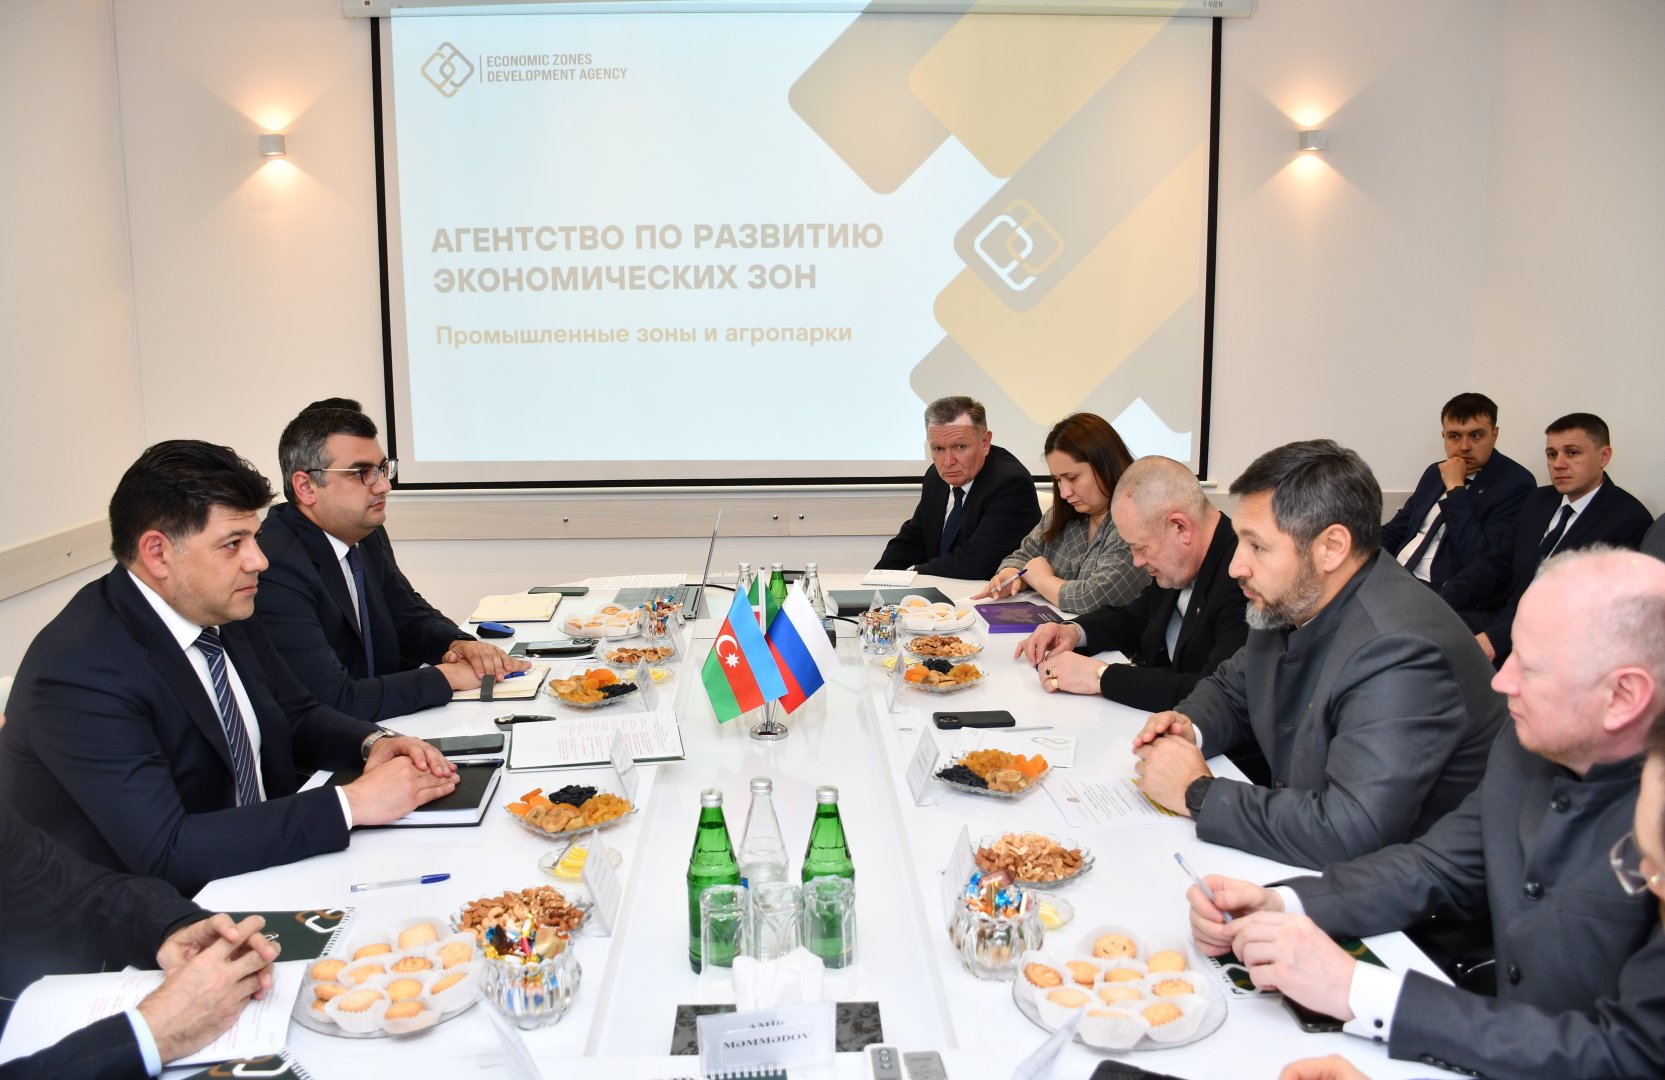 Азербайджан и Татарстан обсудили инвестиционные проекты в промышленных зонах (ФОТО)